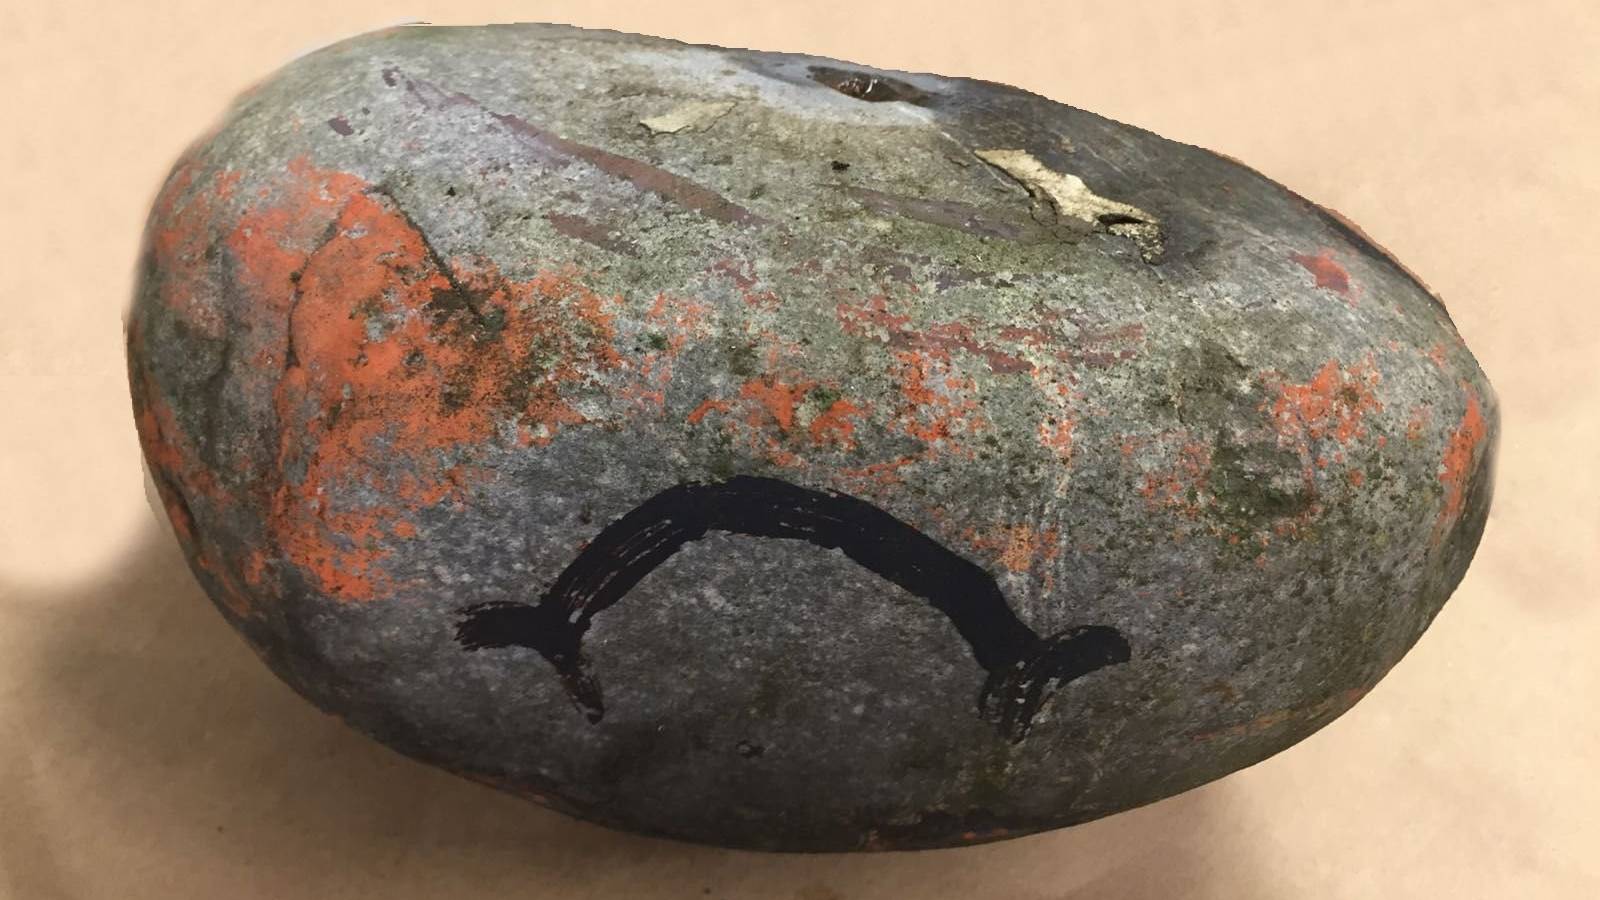 Hinweise zur Herkunft des Steins sind von der Polizei erwünscht.